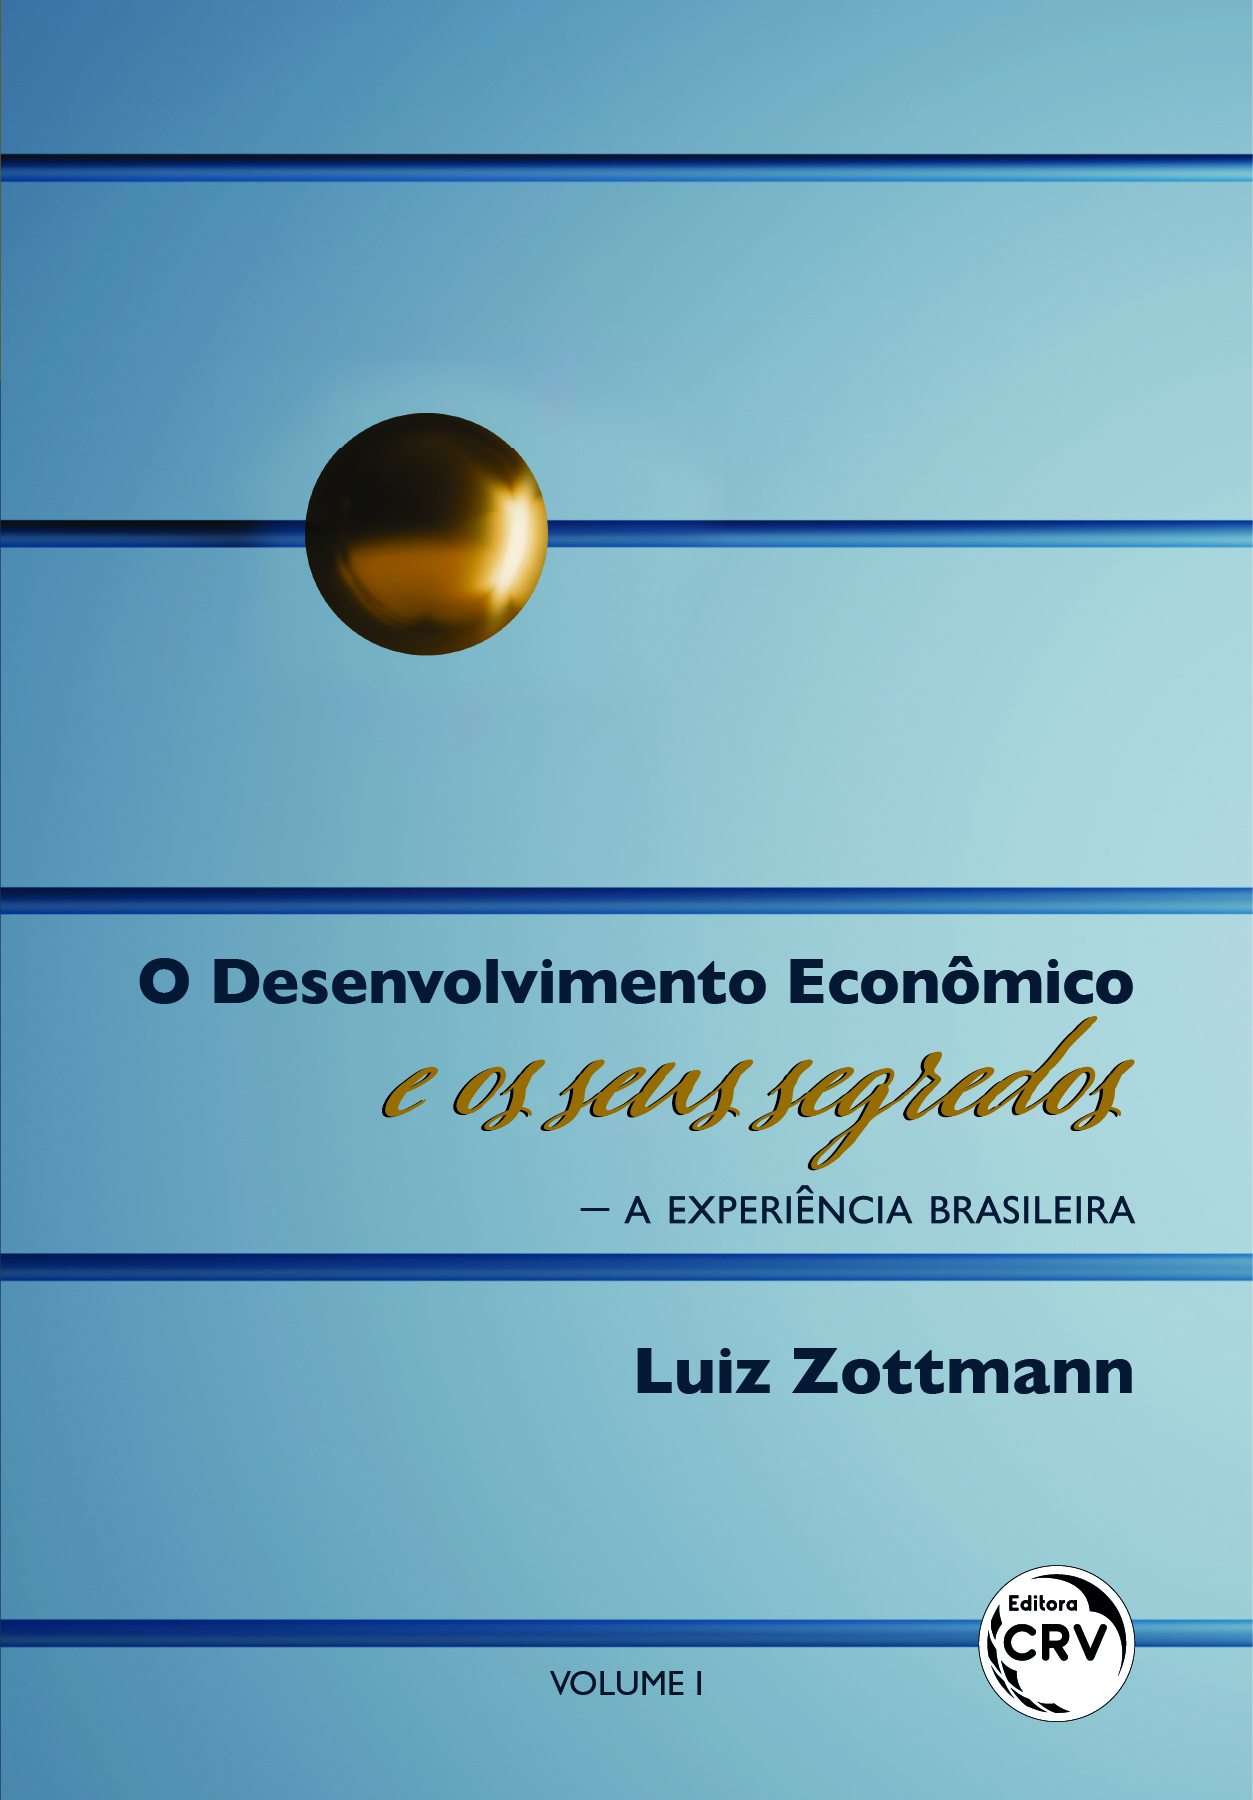 Capa do livro: O DESENVOLVIMENTO ECONÔMICO E OS SEUS SEGREDOS — A EXPERIÊNCIA BRASILEIRA <br> Volume 1